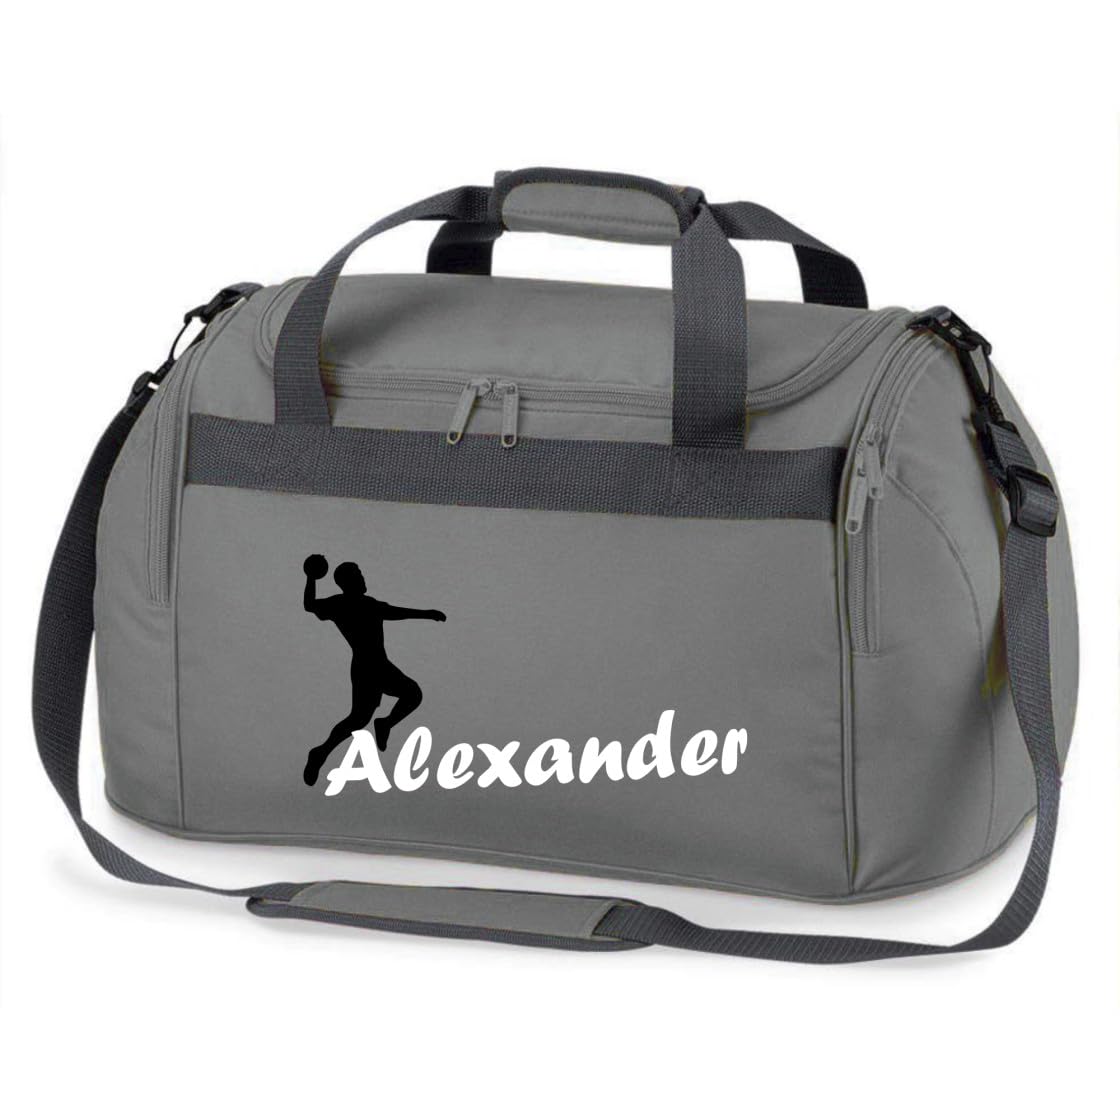 minimutz Sporttasche mit Namen Bedruckt für Kinder | Personalisierbar mit Motiv Handball | Reisetasche Duffle Bag für Mädchen und Jungen | Handballspieler Sport (grau)